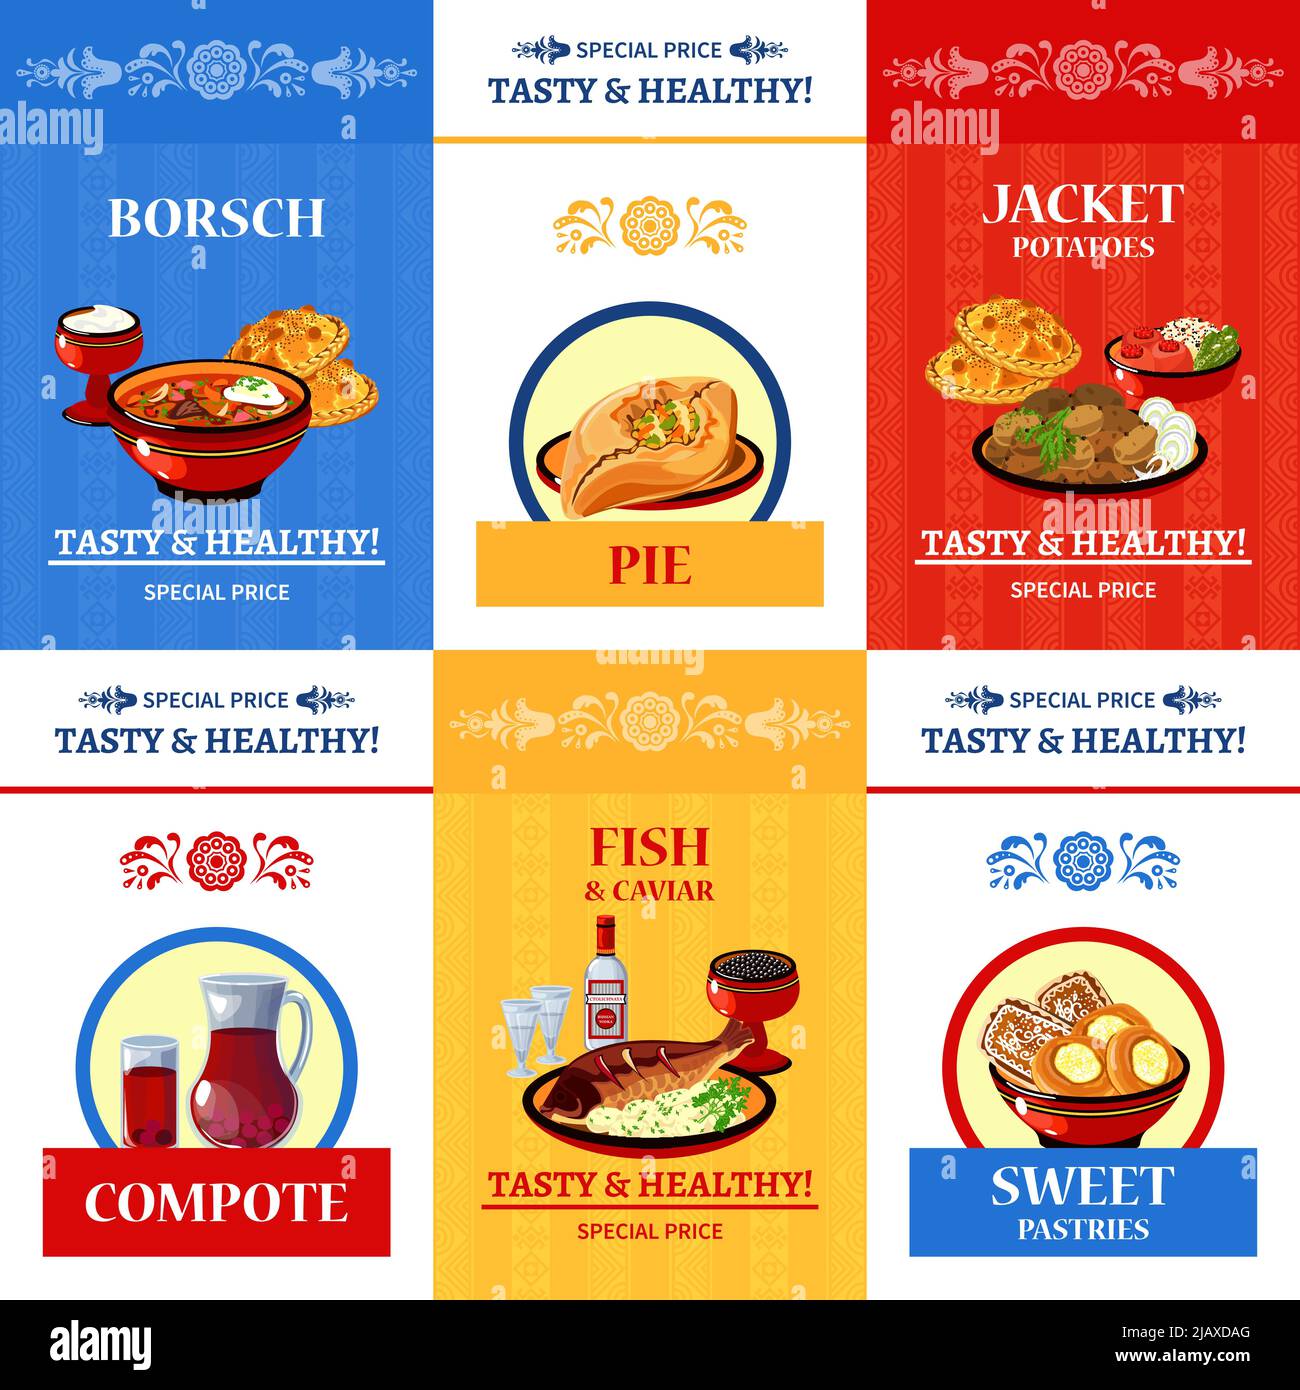 Cuisine russe offre spéciale icônes plates affiche de composition avec poisson et caviar plat principal résumé illustration vectorielle isolée Illustration de Vecteur